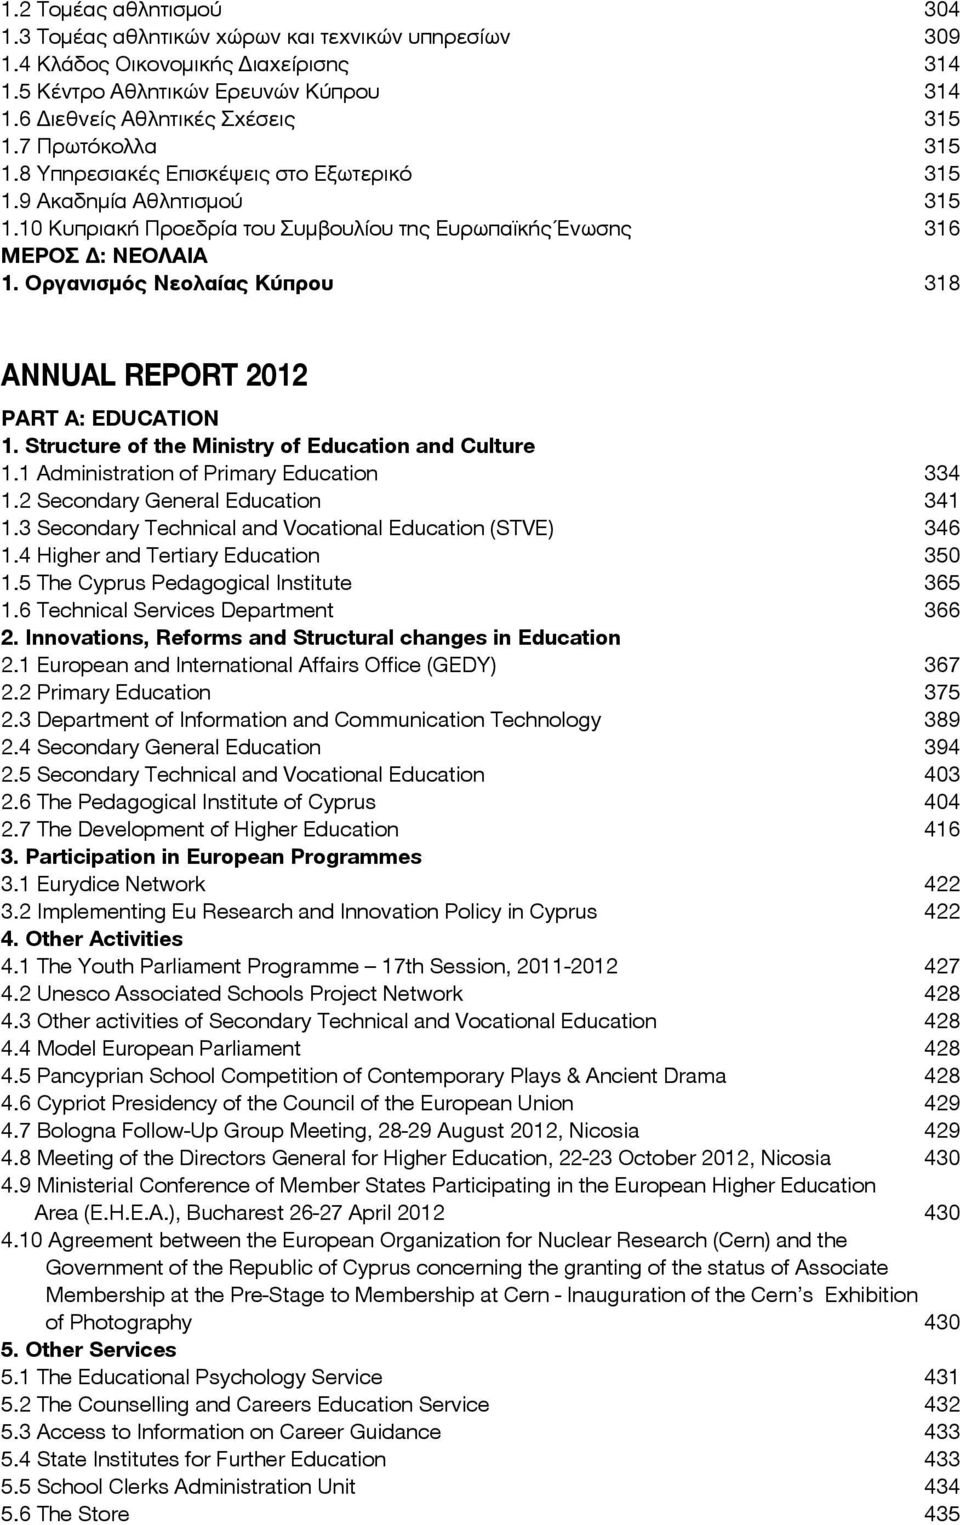 Οργανισμός Νεολαίας Κύπρου 318 ANNUAL REPORT 2012 PART A: EDUCATION 1. Structure of the Ministry of Education and Culture 1.1 Administration of Primary Education 334 1.